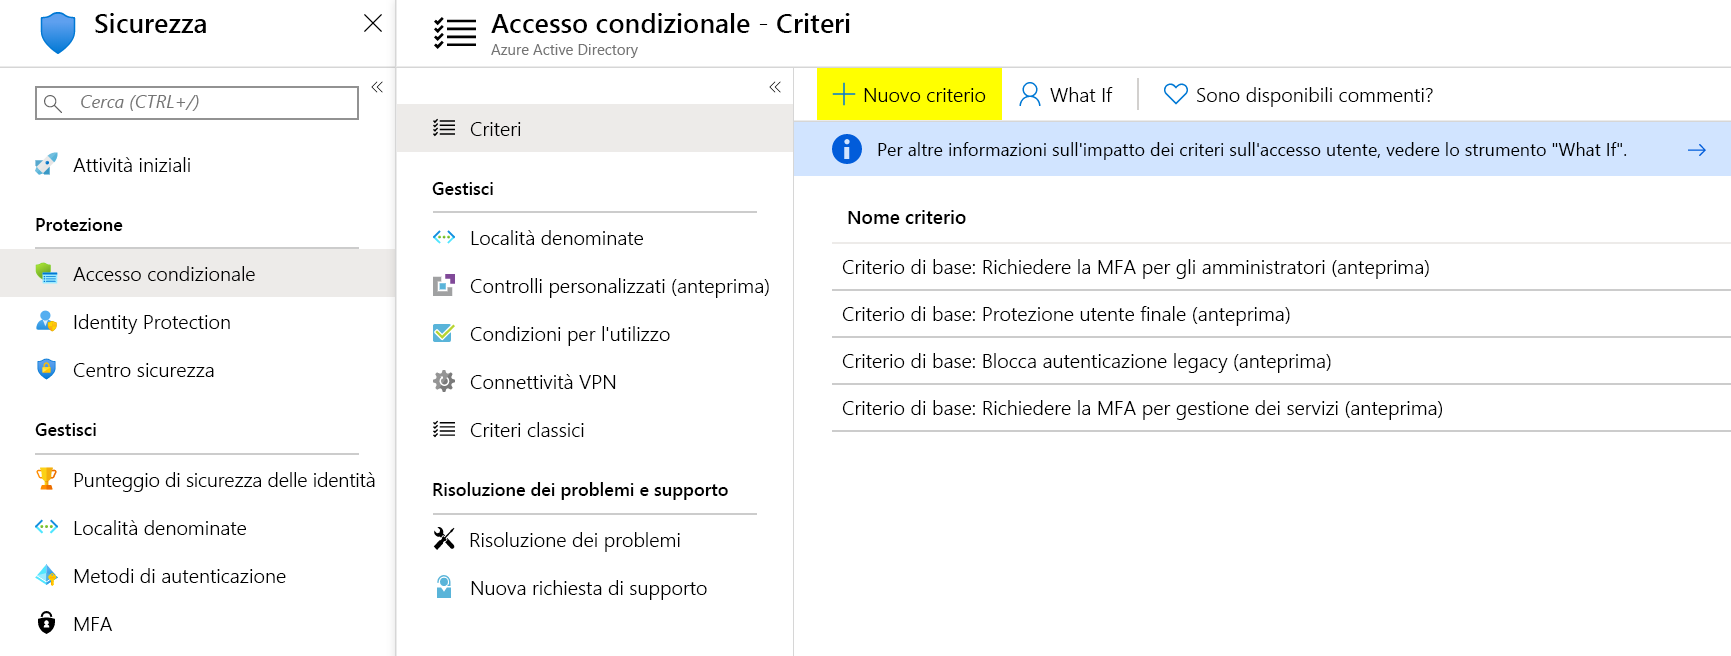 Screenshot della schermata Accesso condizionale di Microsoft Entra con un elenco dei criteri attualmente esistenti.